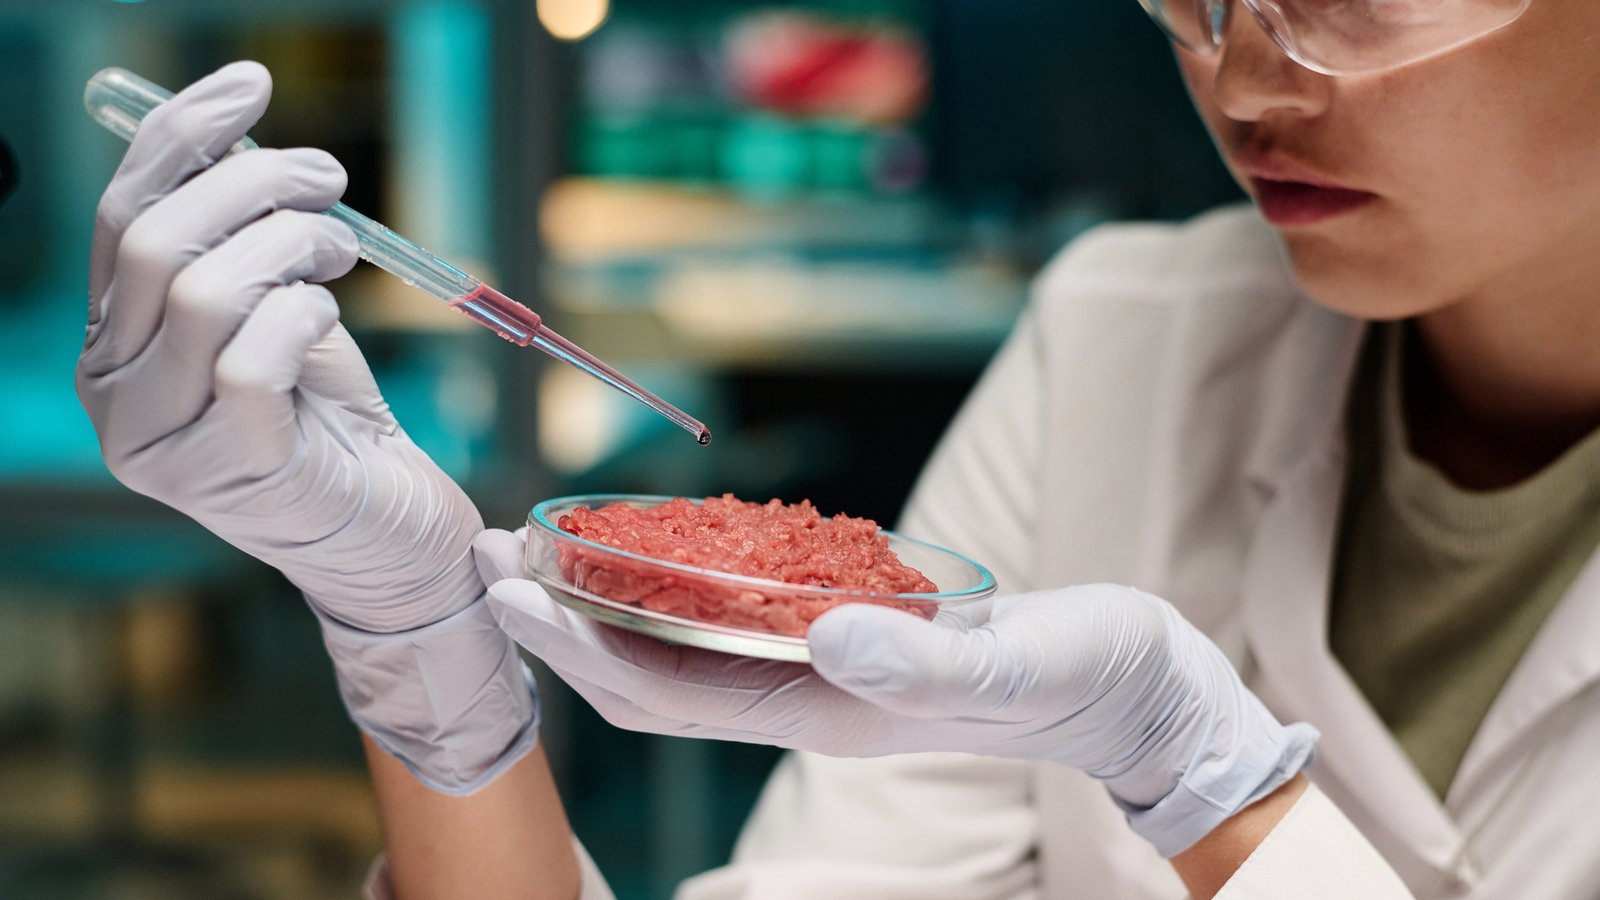 英国监管机构批准销售培育肉